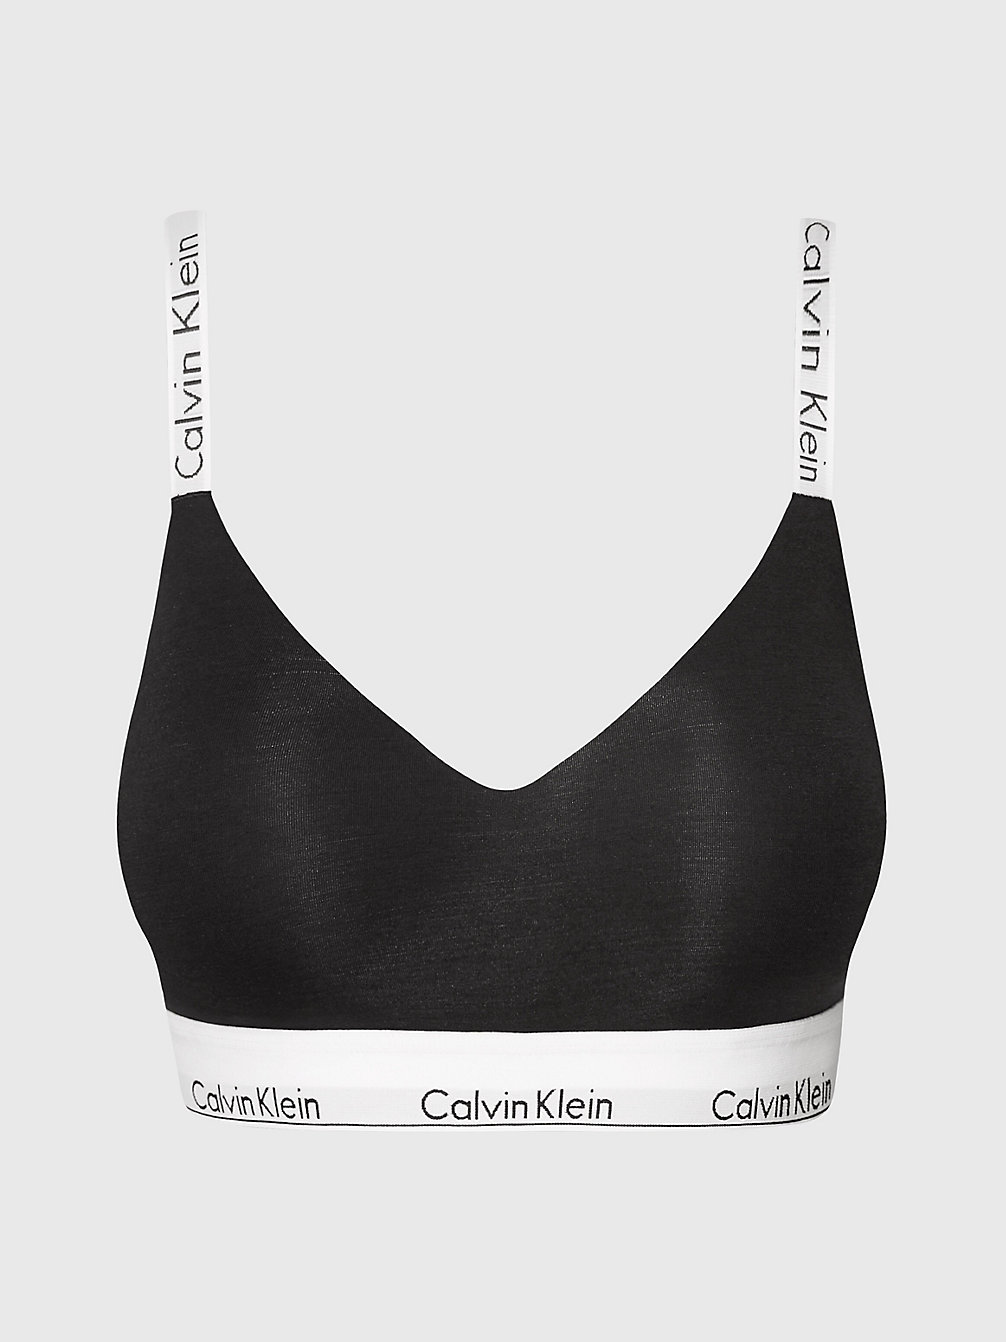 Brassière Coppa Piena - Modern Cotton > BLACK > undefined donna > Calvin Klein